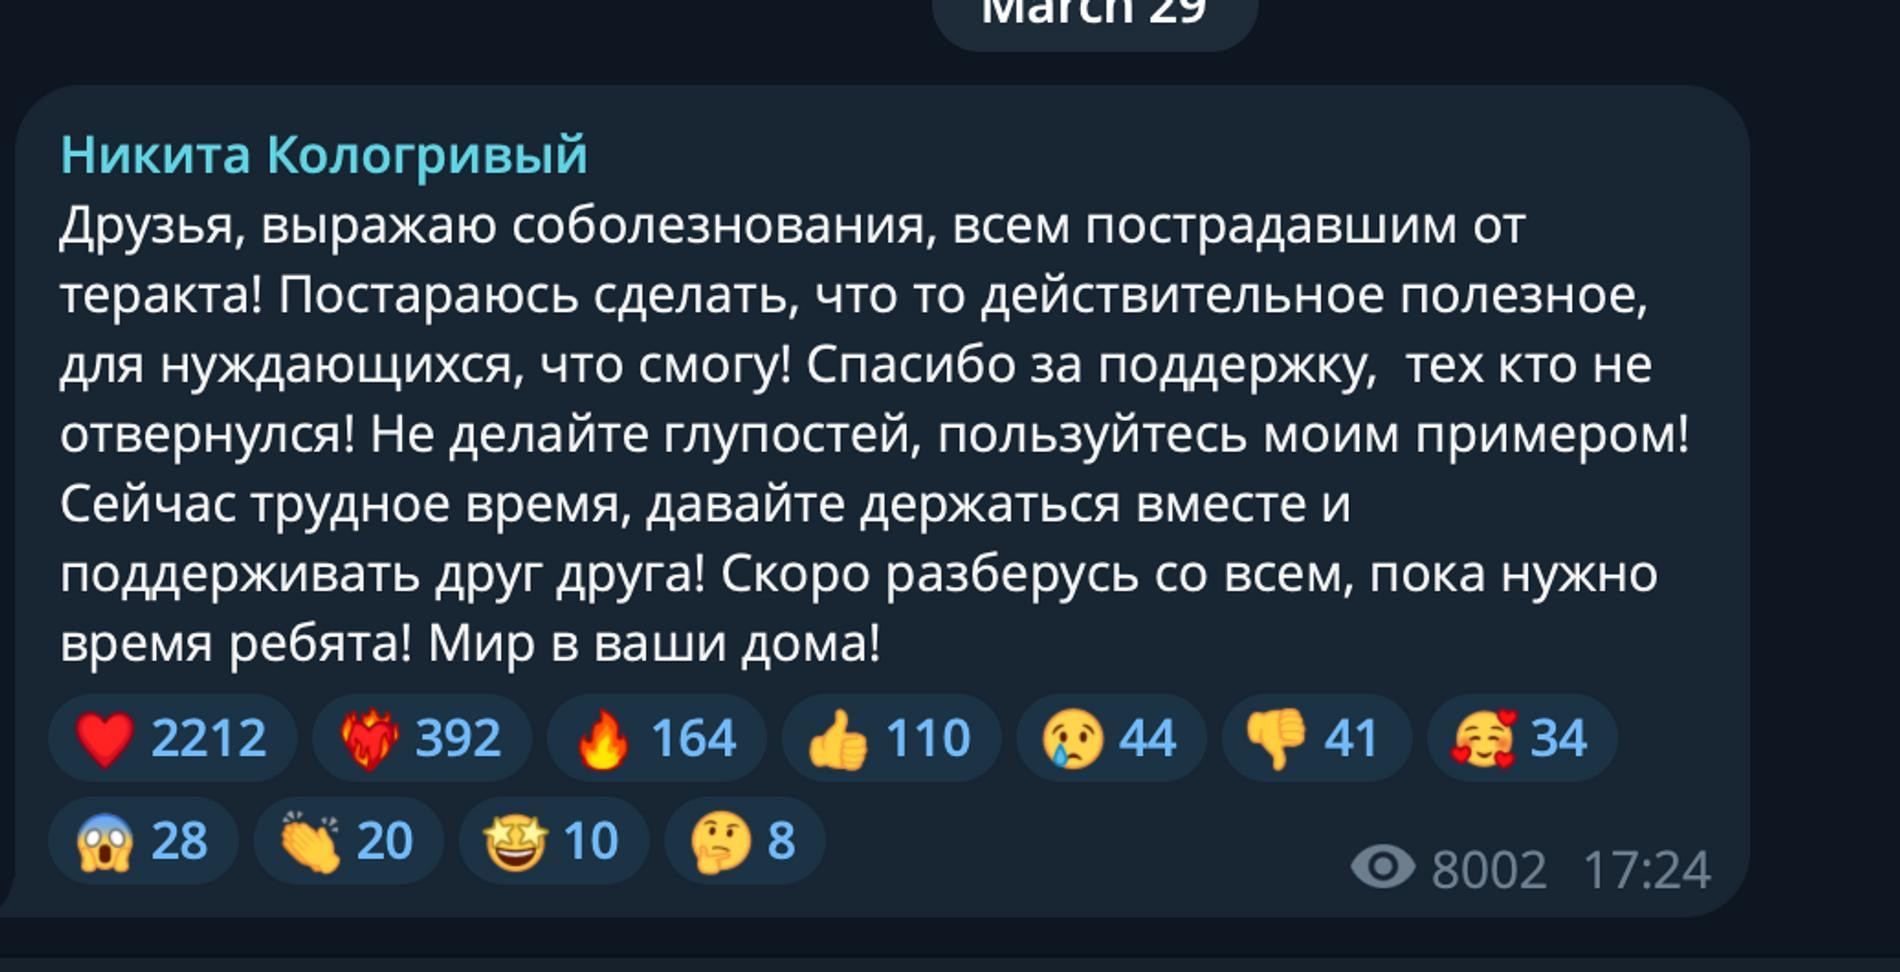 Фото: Telegram-канал Никиты Кологривого